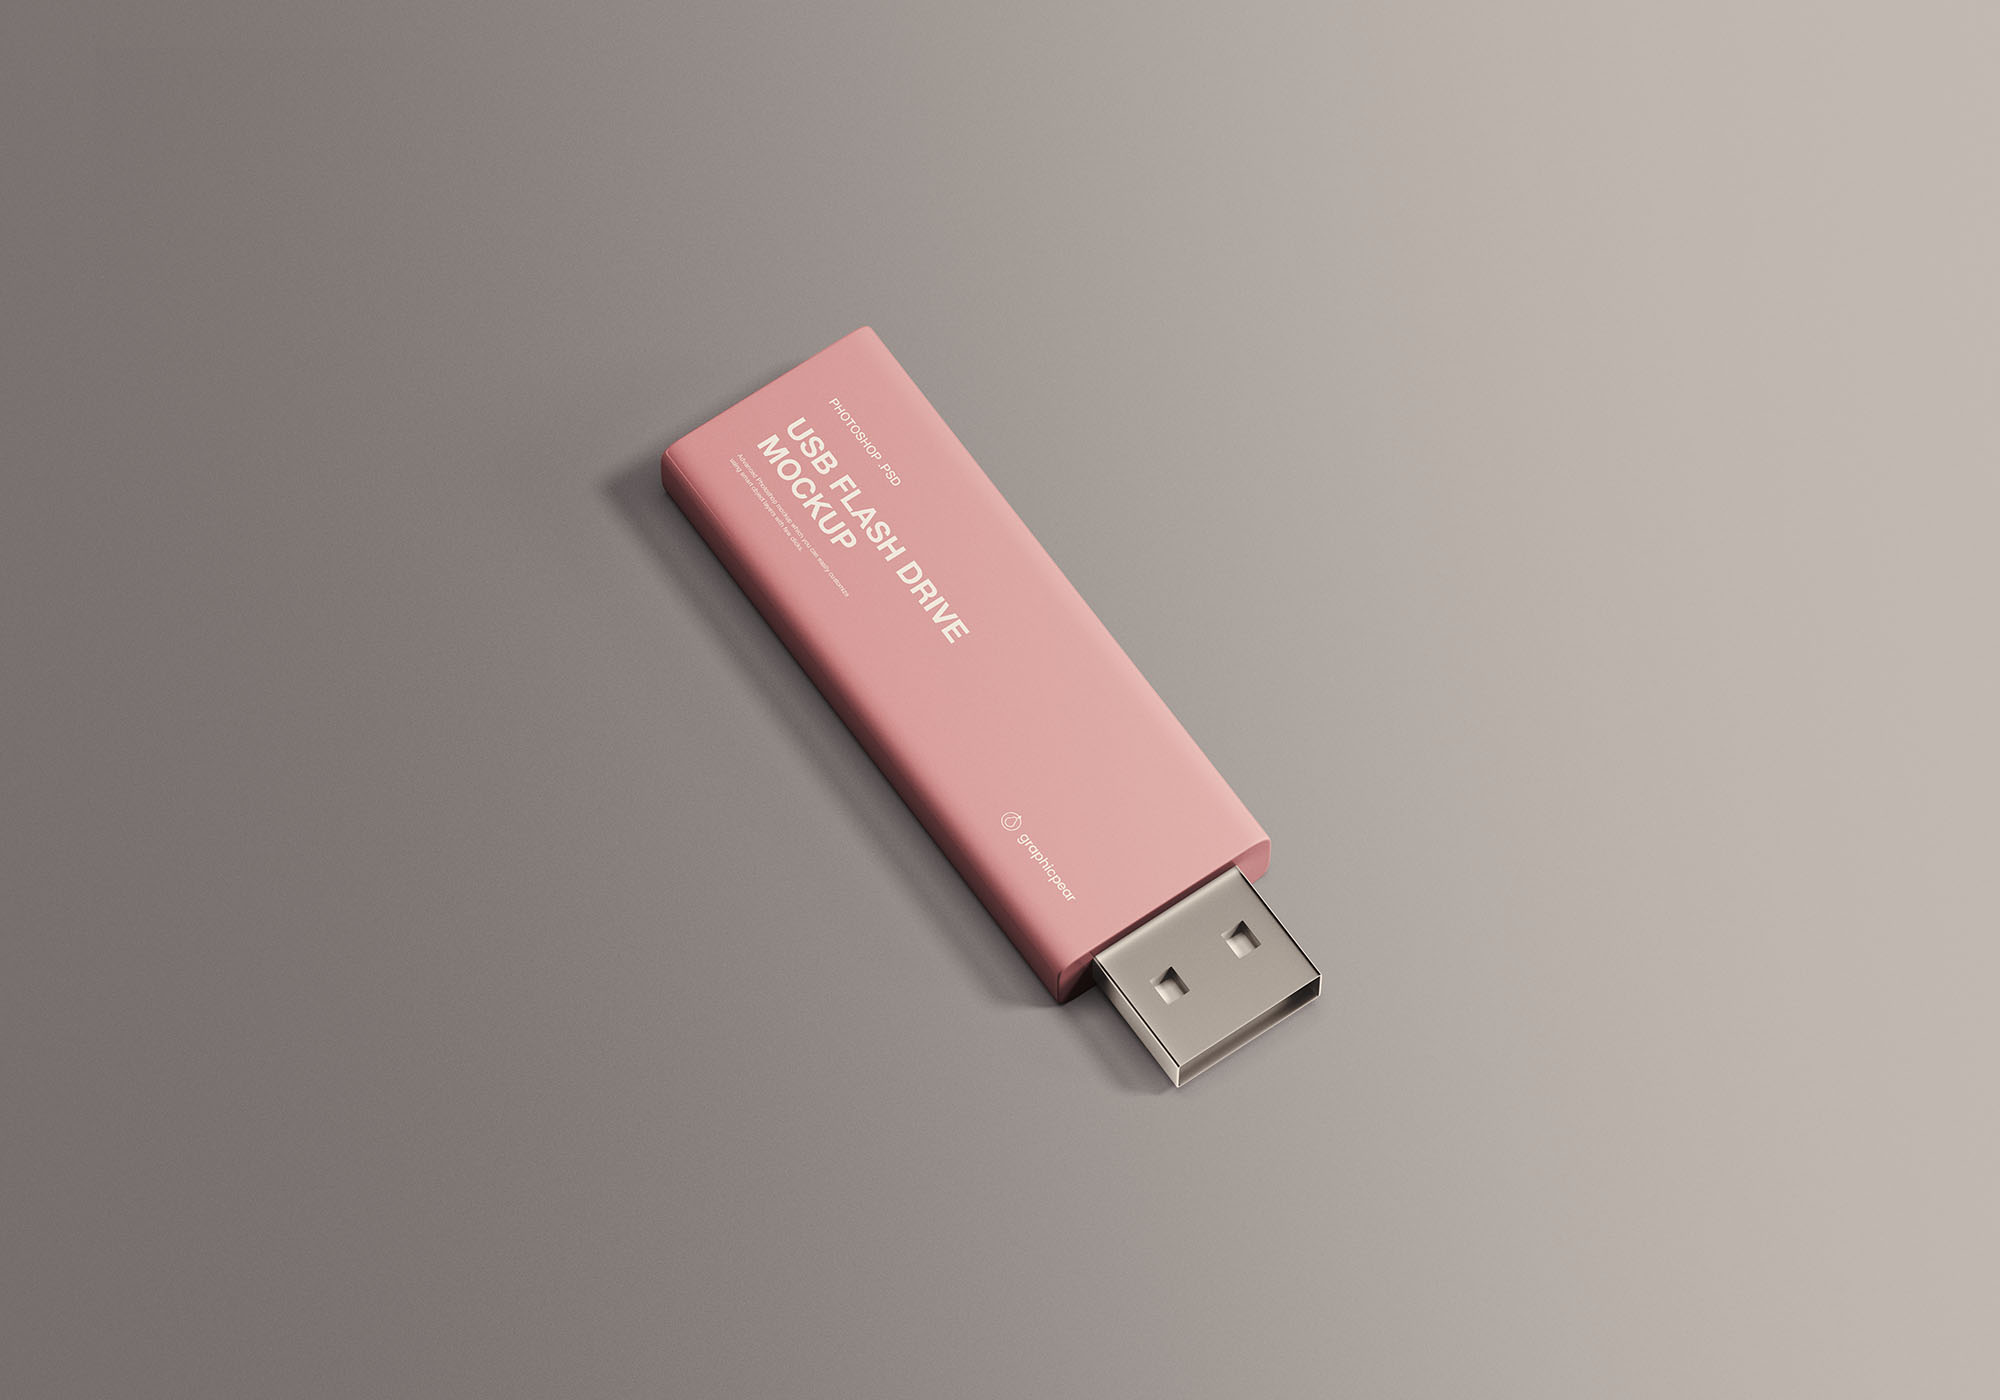 简约设计风格U盘硬件设备外观设计效果图样机 USB Flash Drive Mockup插图